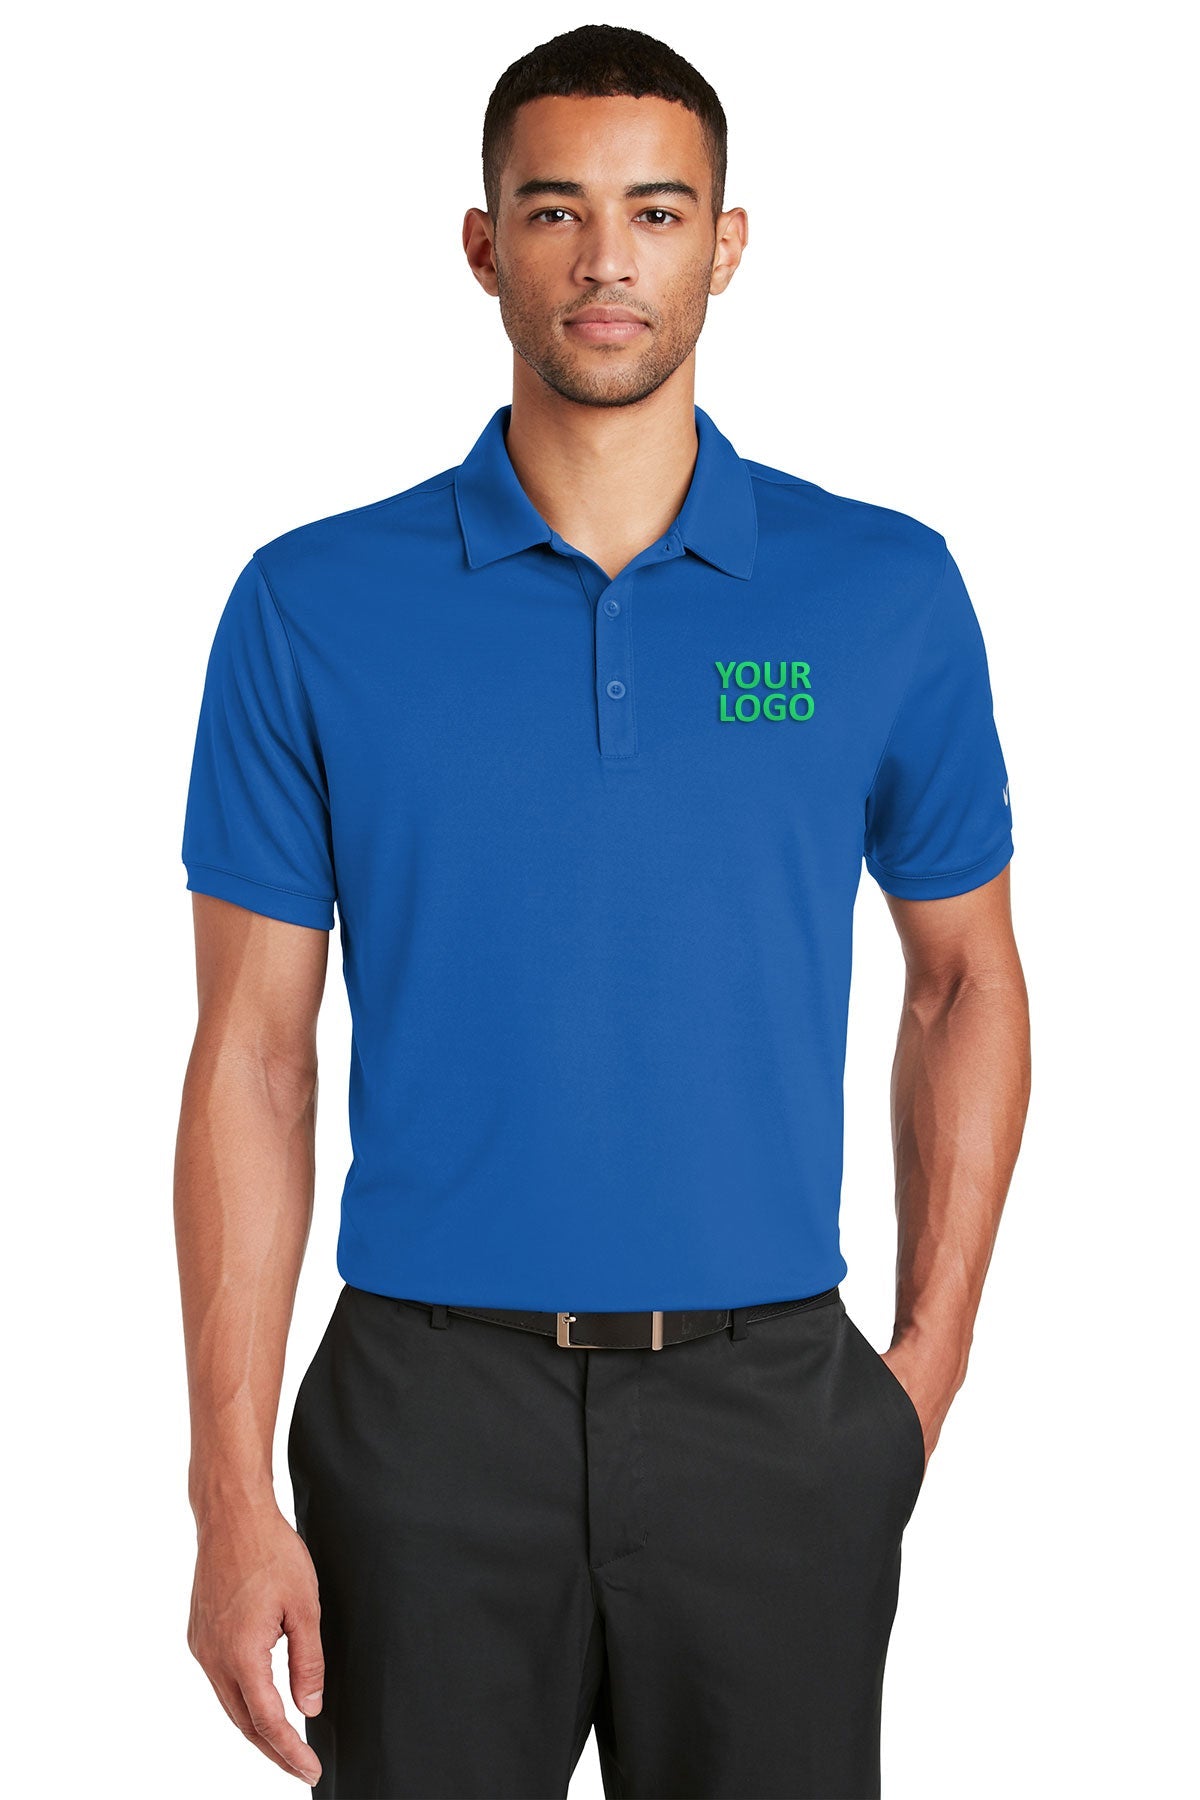 nike gym blue 799802 quality polo shirts with company logo